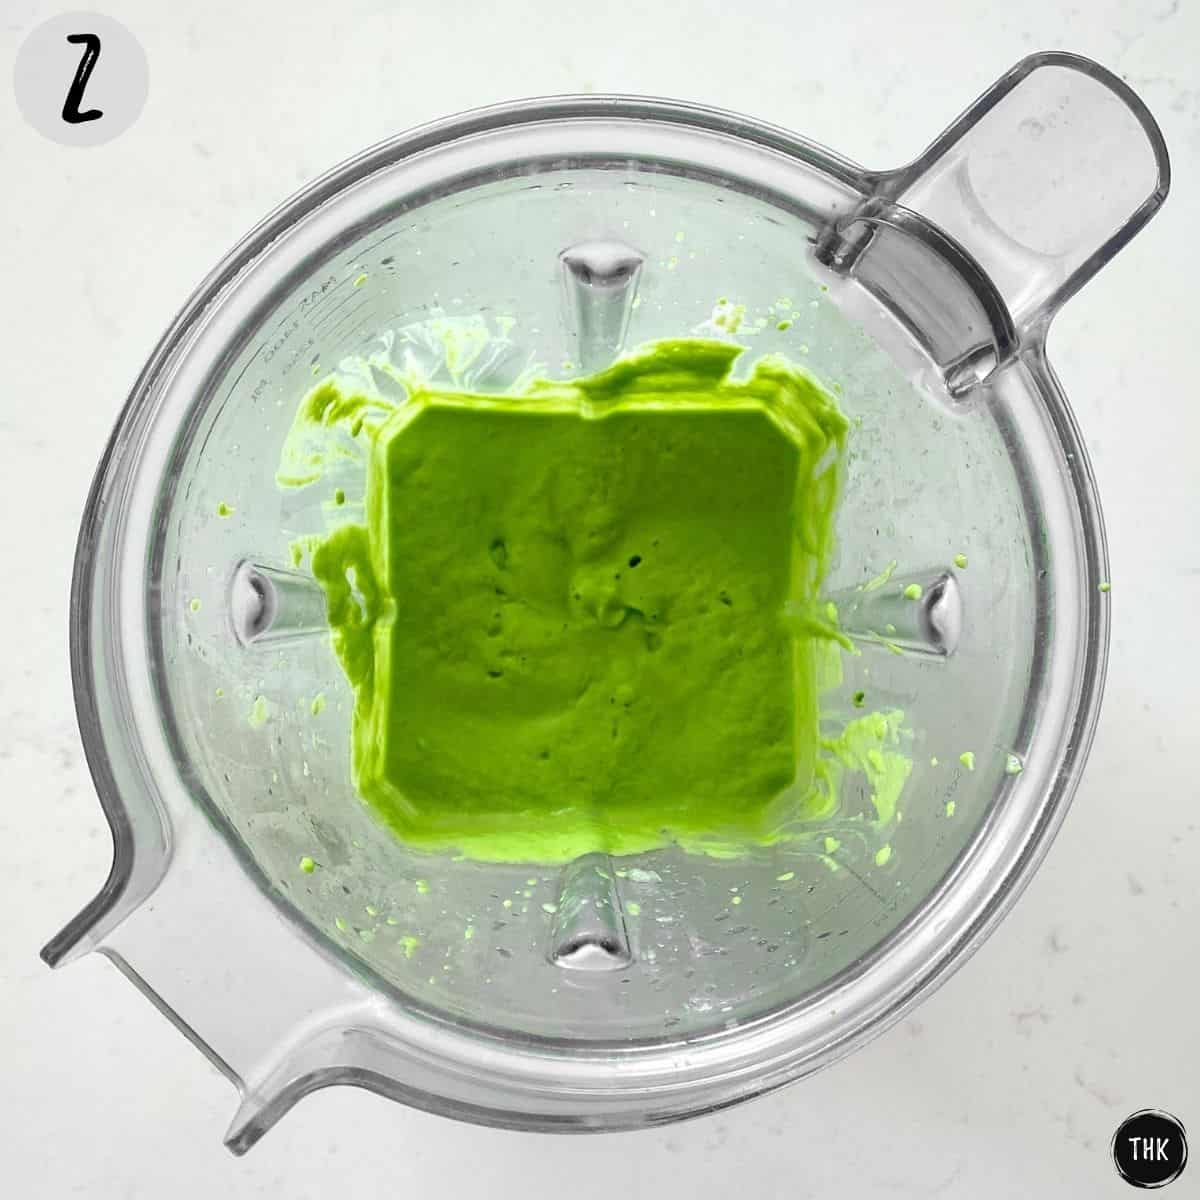 Green spread inside blender.